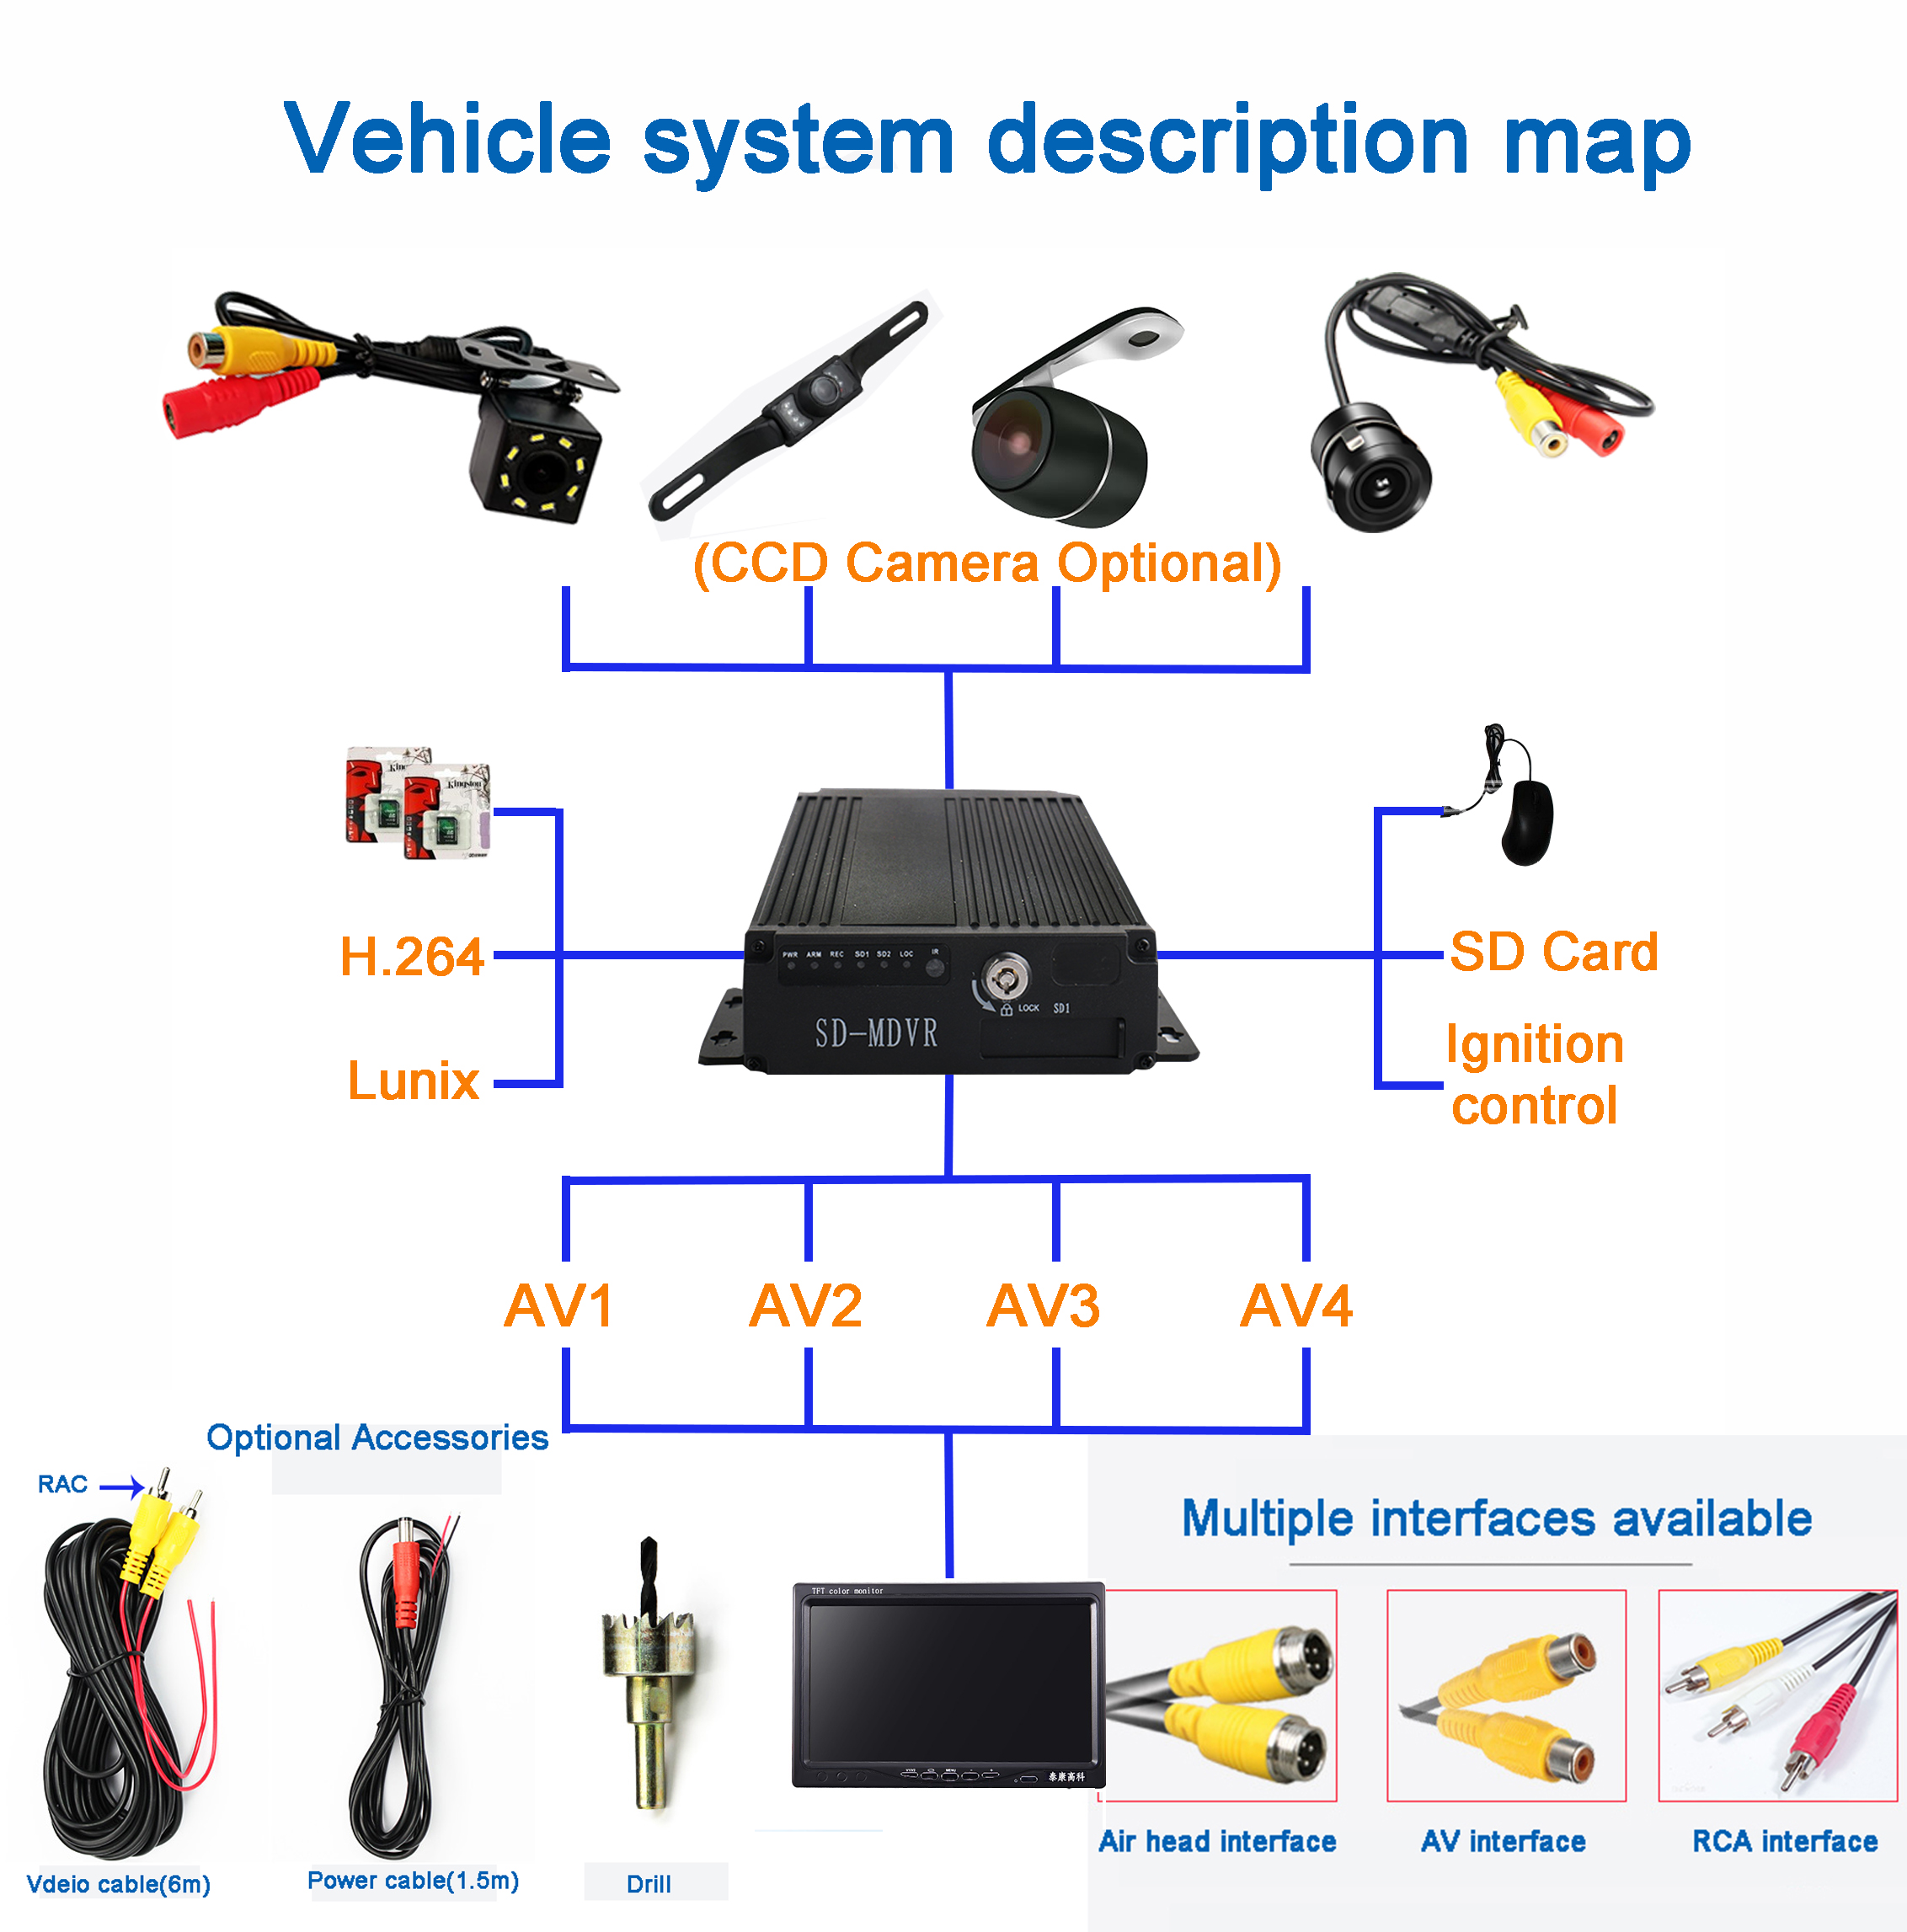 4chs MDVR vehicle system description